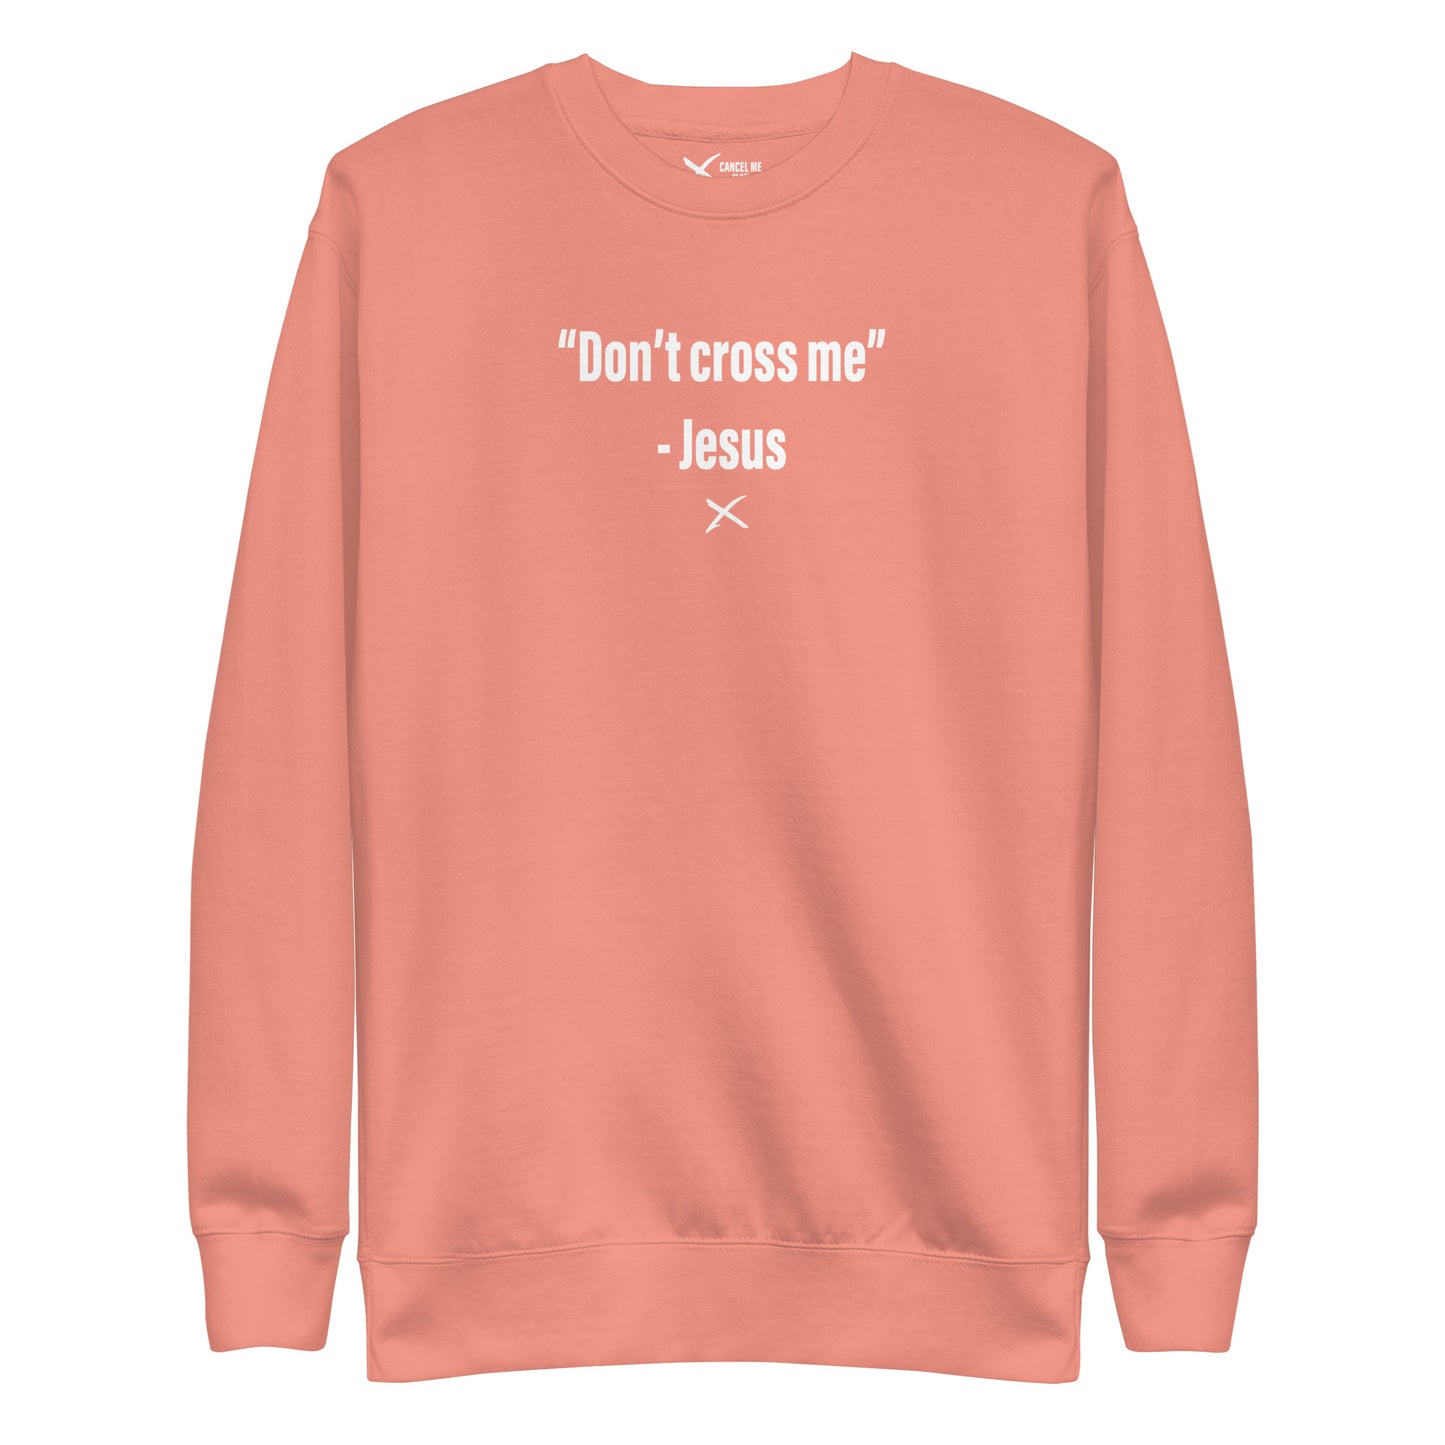 "Don't cross me" - Jesus - Sweatshirt